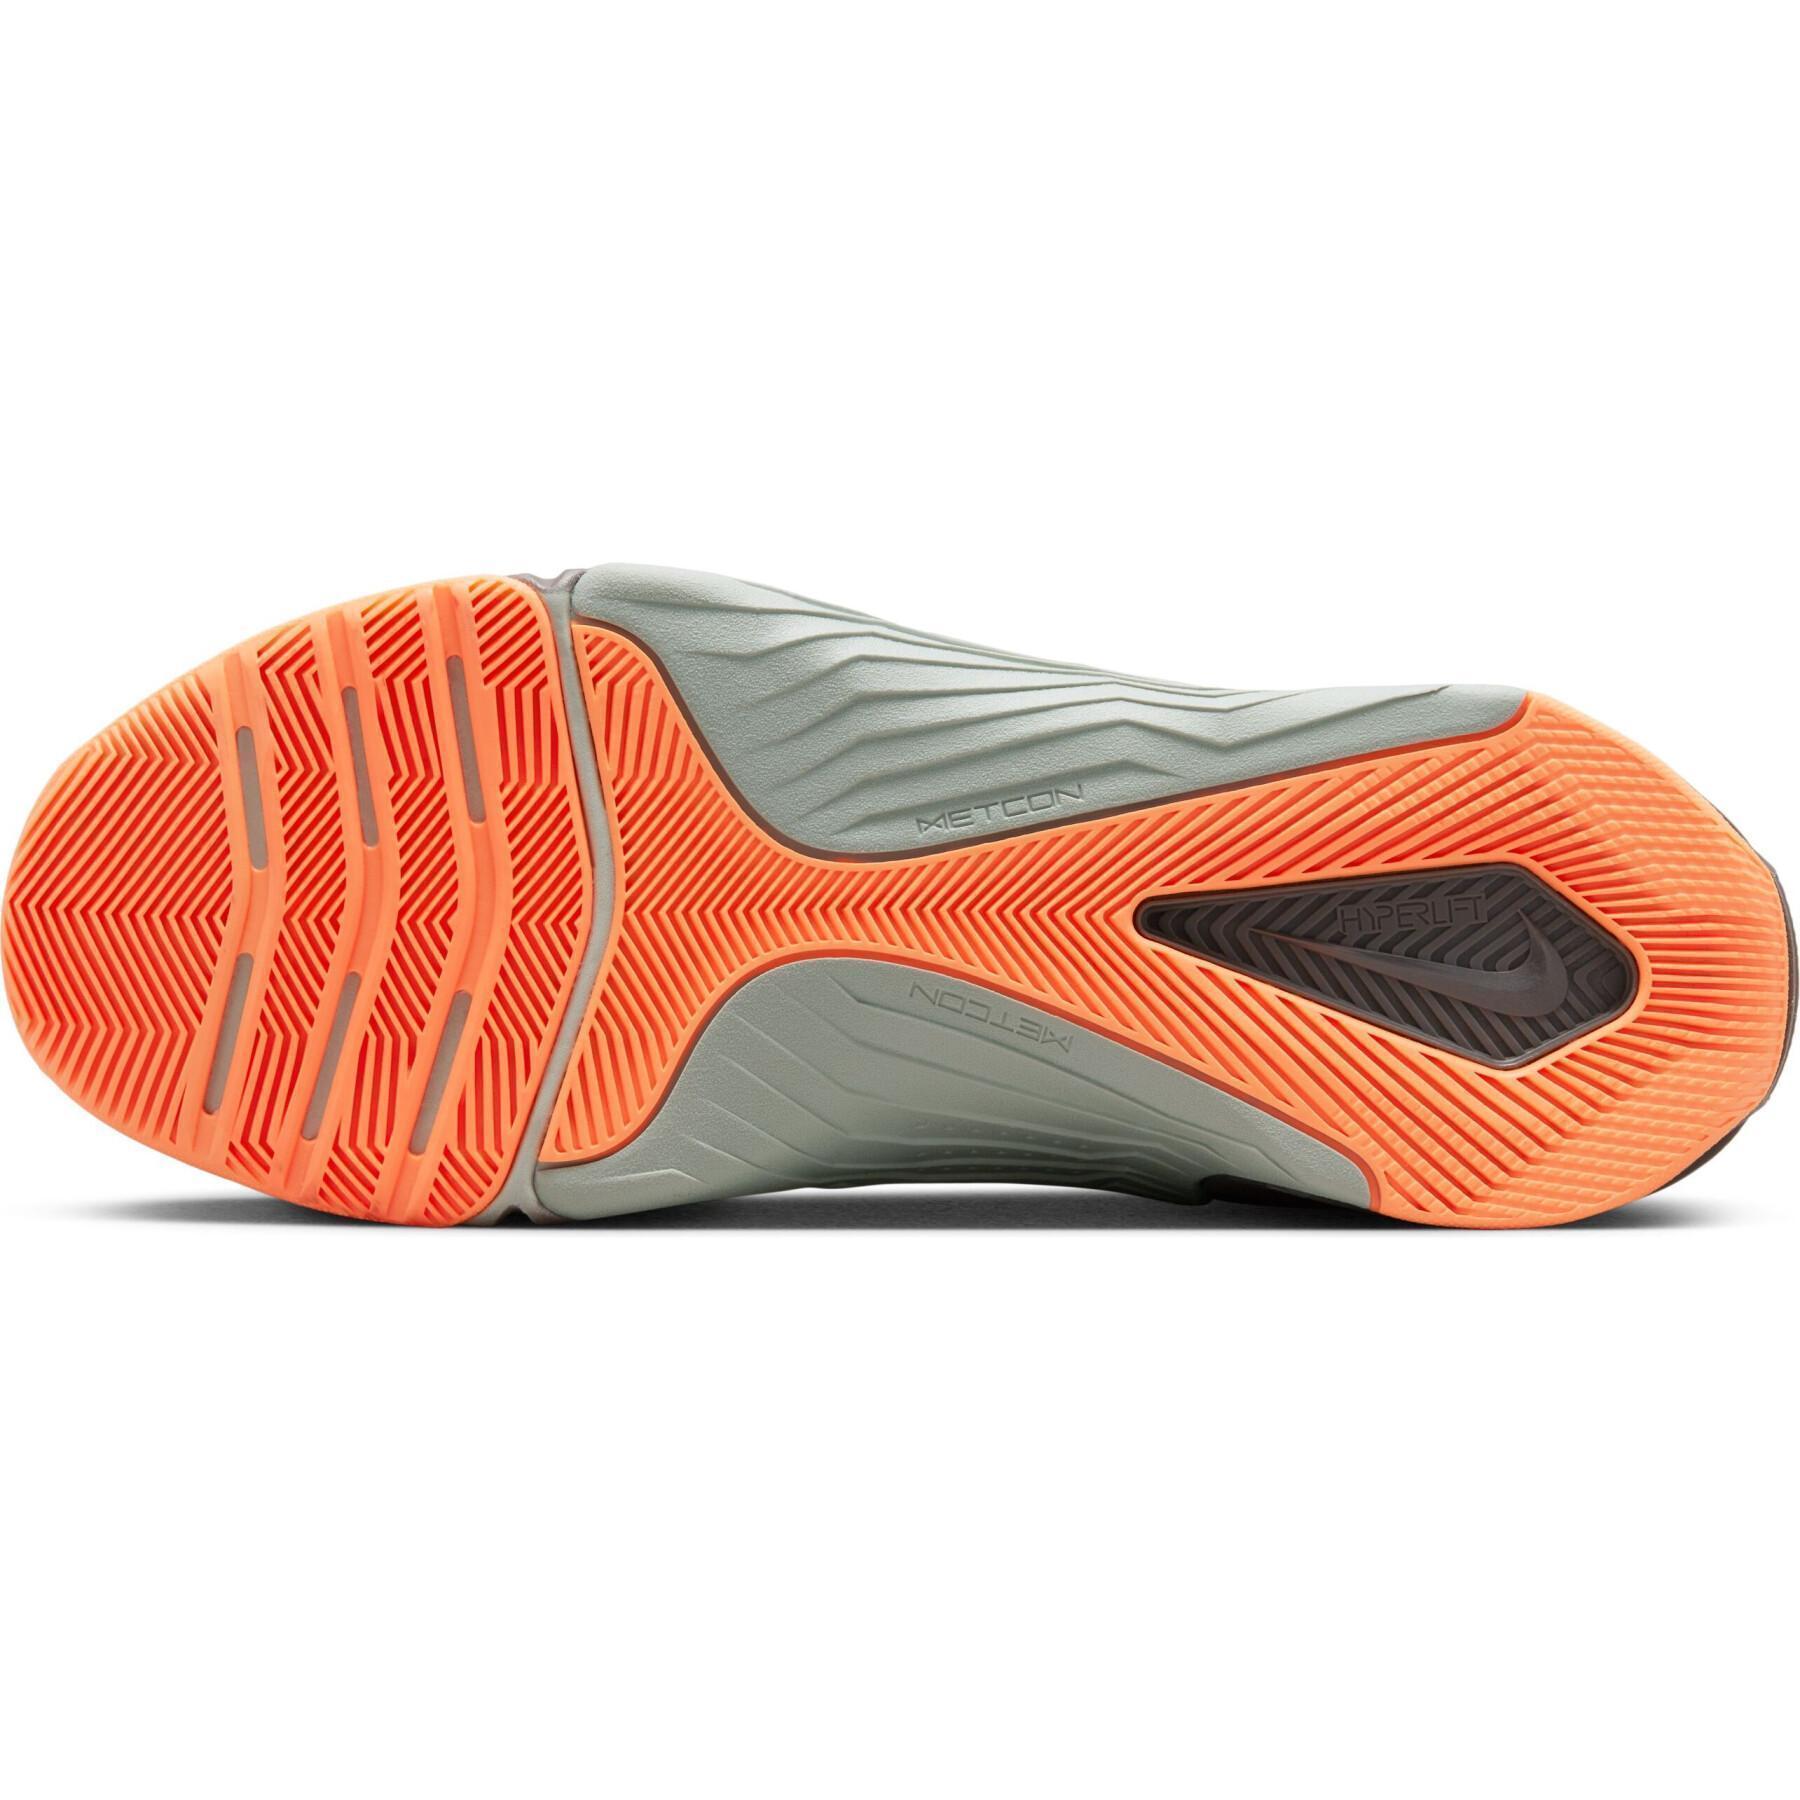 Chaussures indoor Nike Metcon AMP